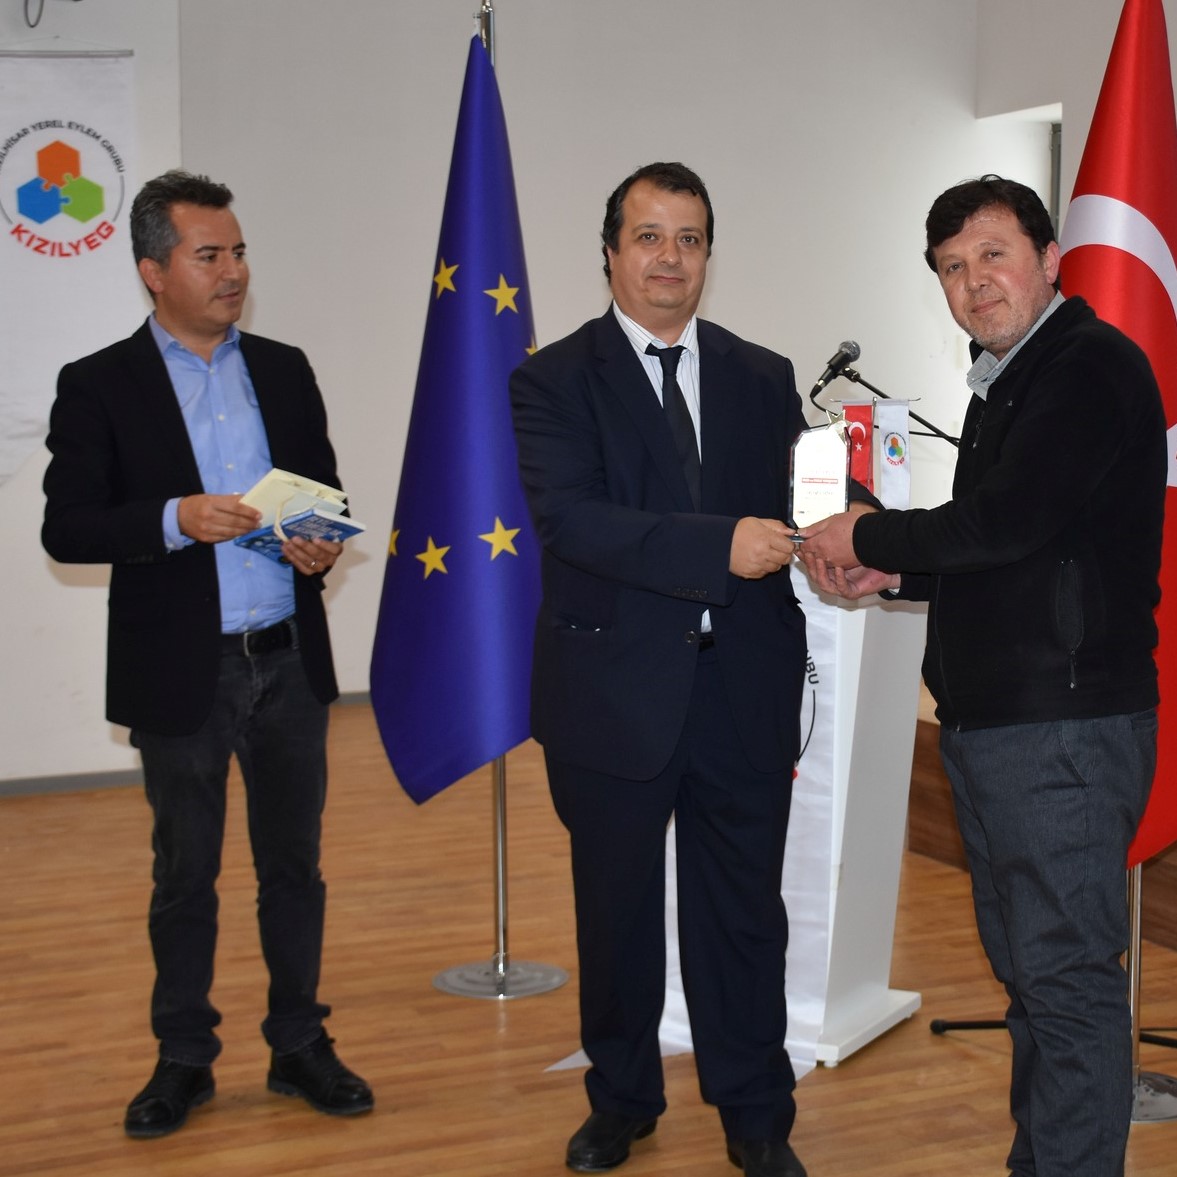 6- Serinhisar İçin Bir Fikrim Var Yarışması Üçüncüsü Mehmet Ali Yavuz Devrim Alkaya'dan ödülünü alırken